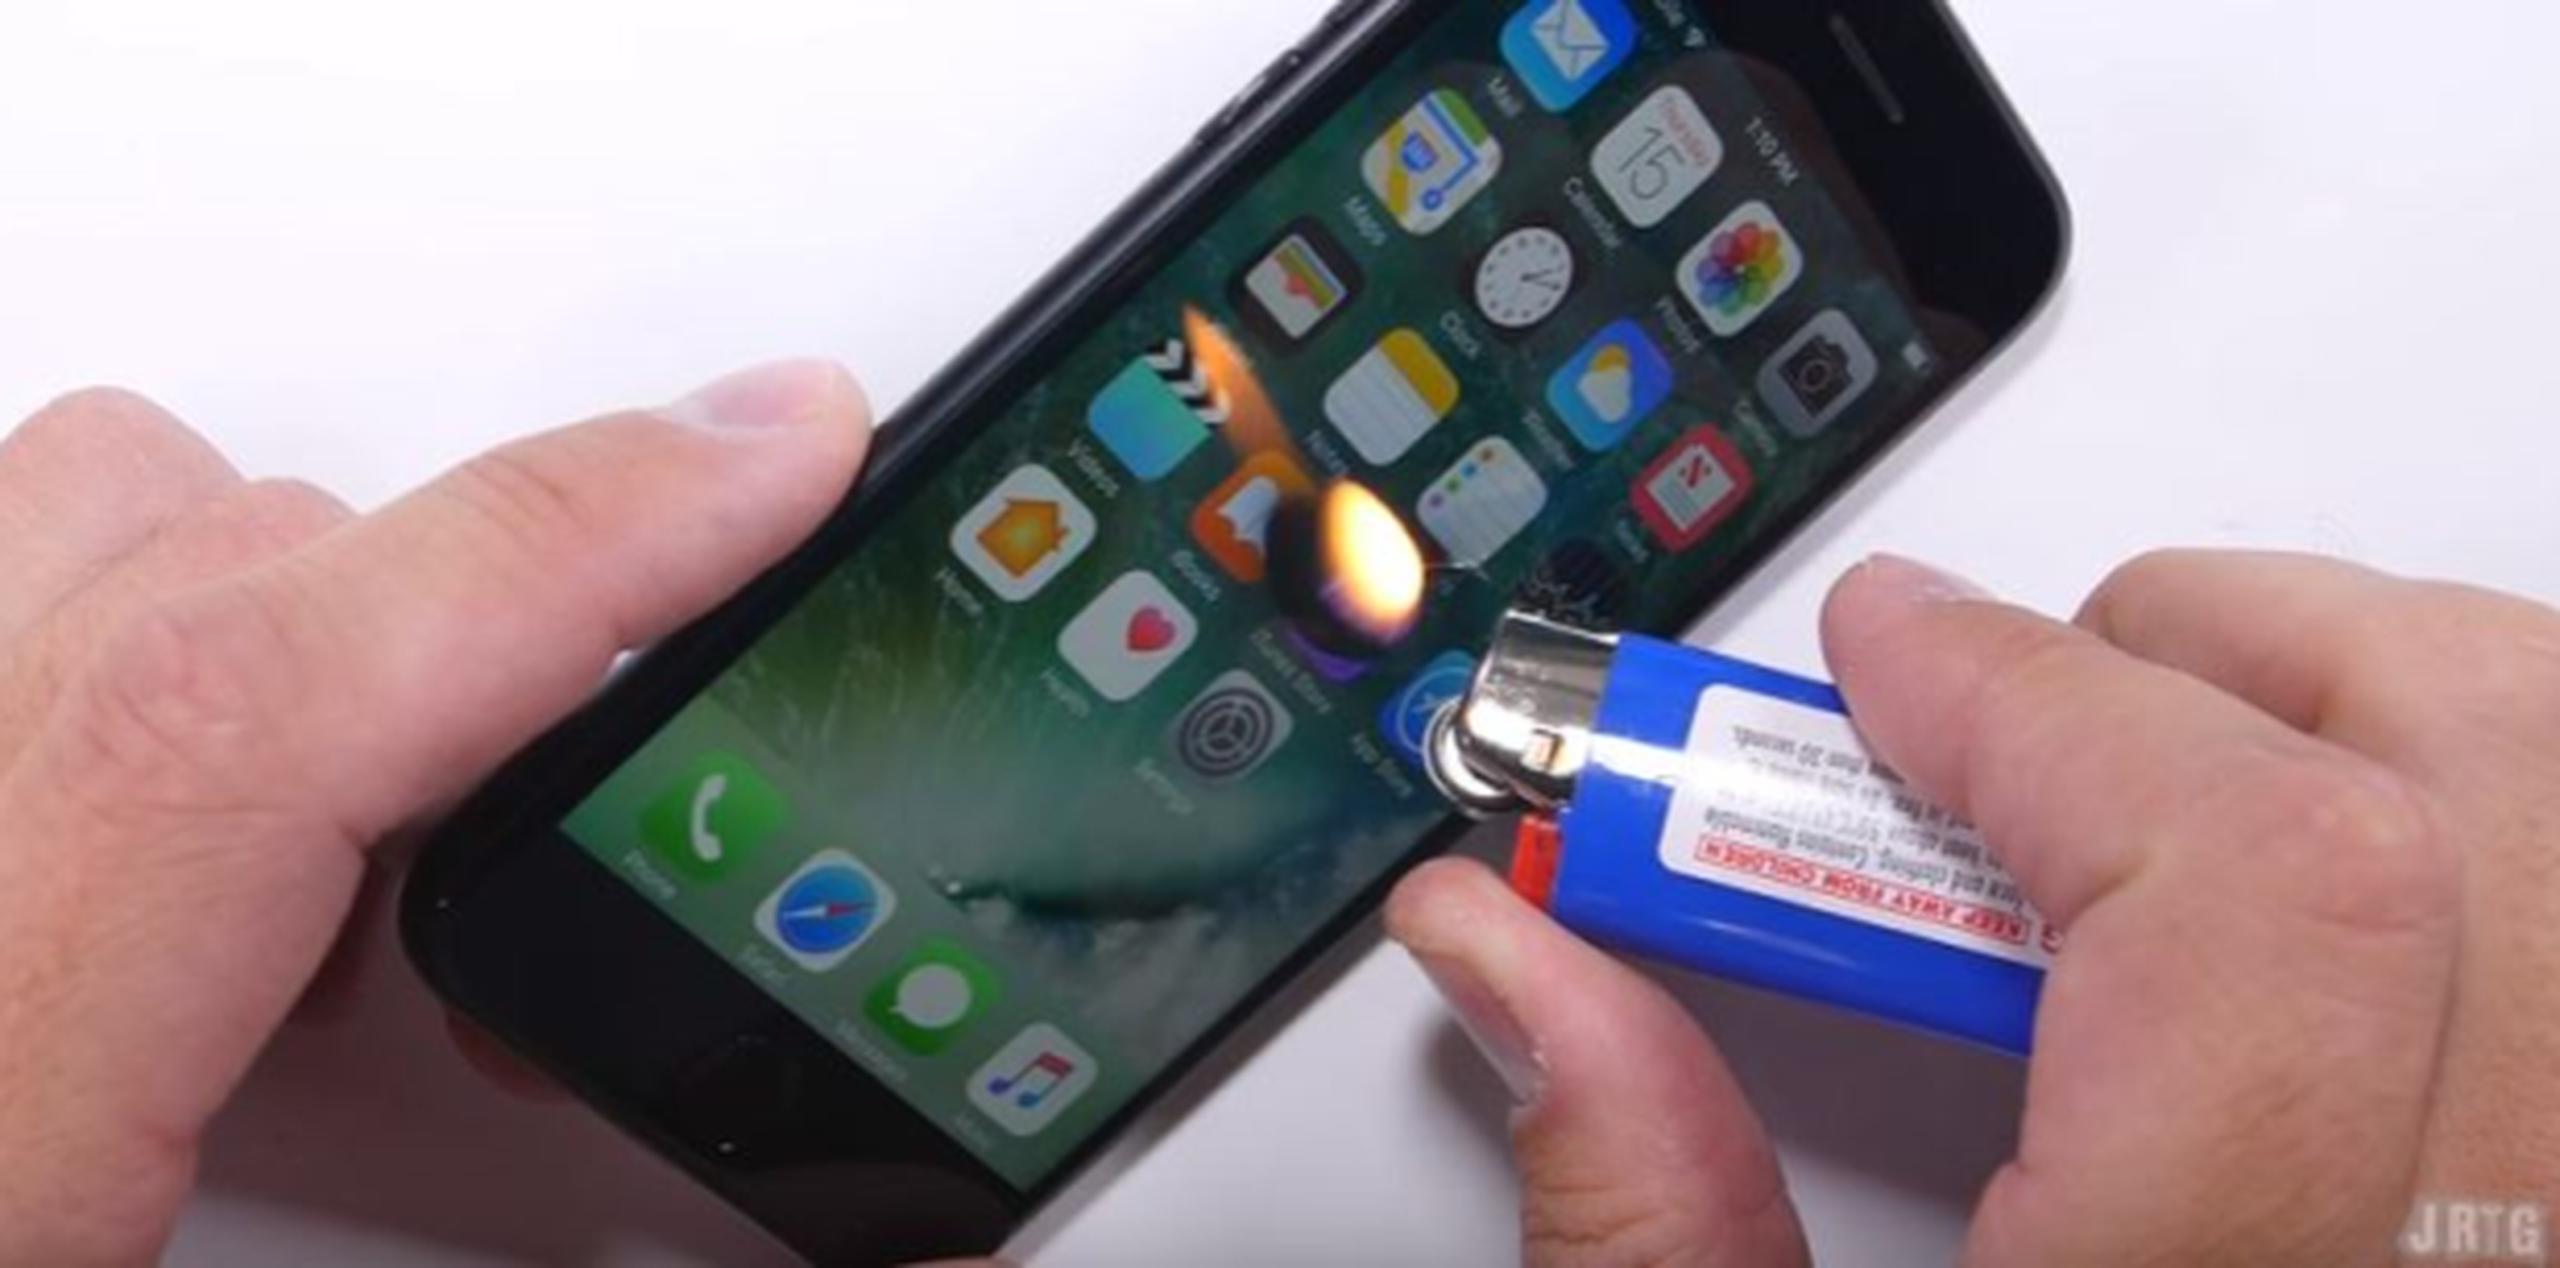 La primera prueba que le hacen al iPhone 7 consta de llevar la pantalla del teléfono al límite. (YouTube)